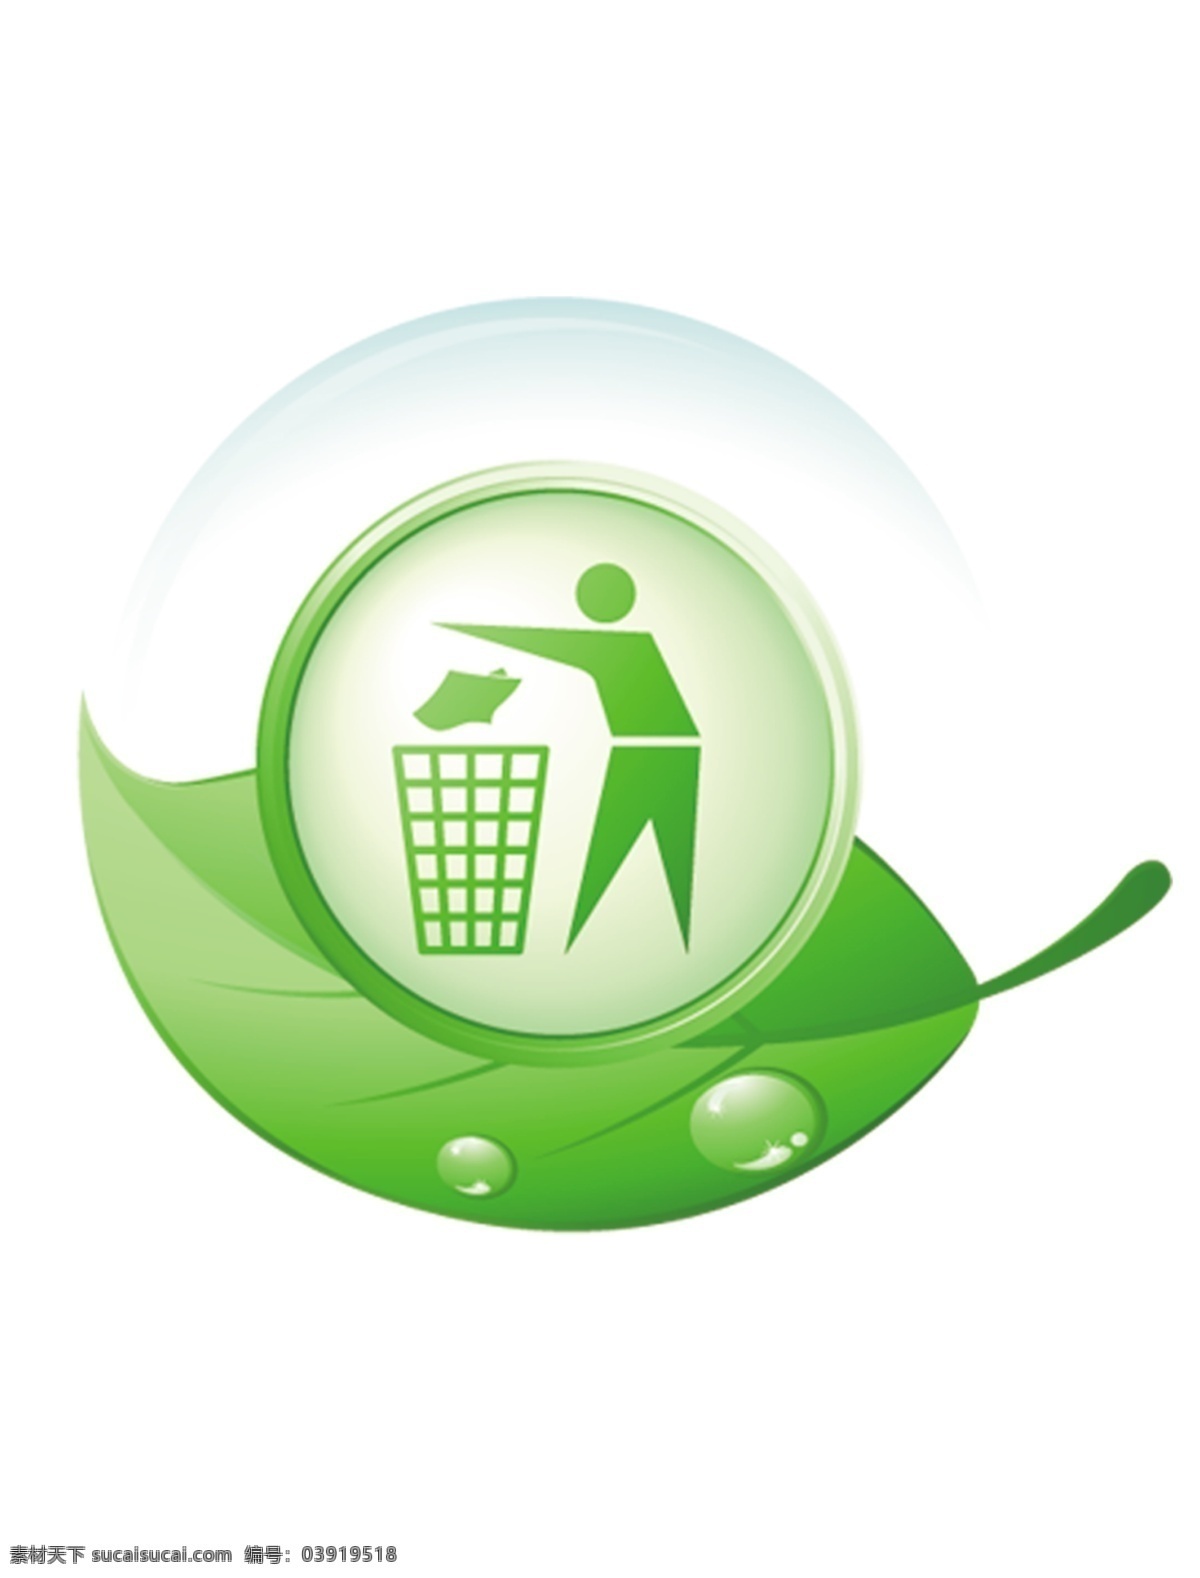 小学 回收站 标志 绿色回收站 logo 环保logo 环保标志 小学回收站 分层